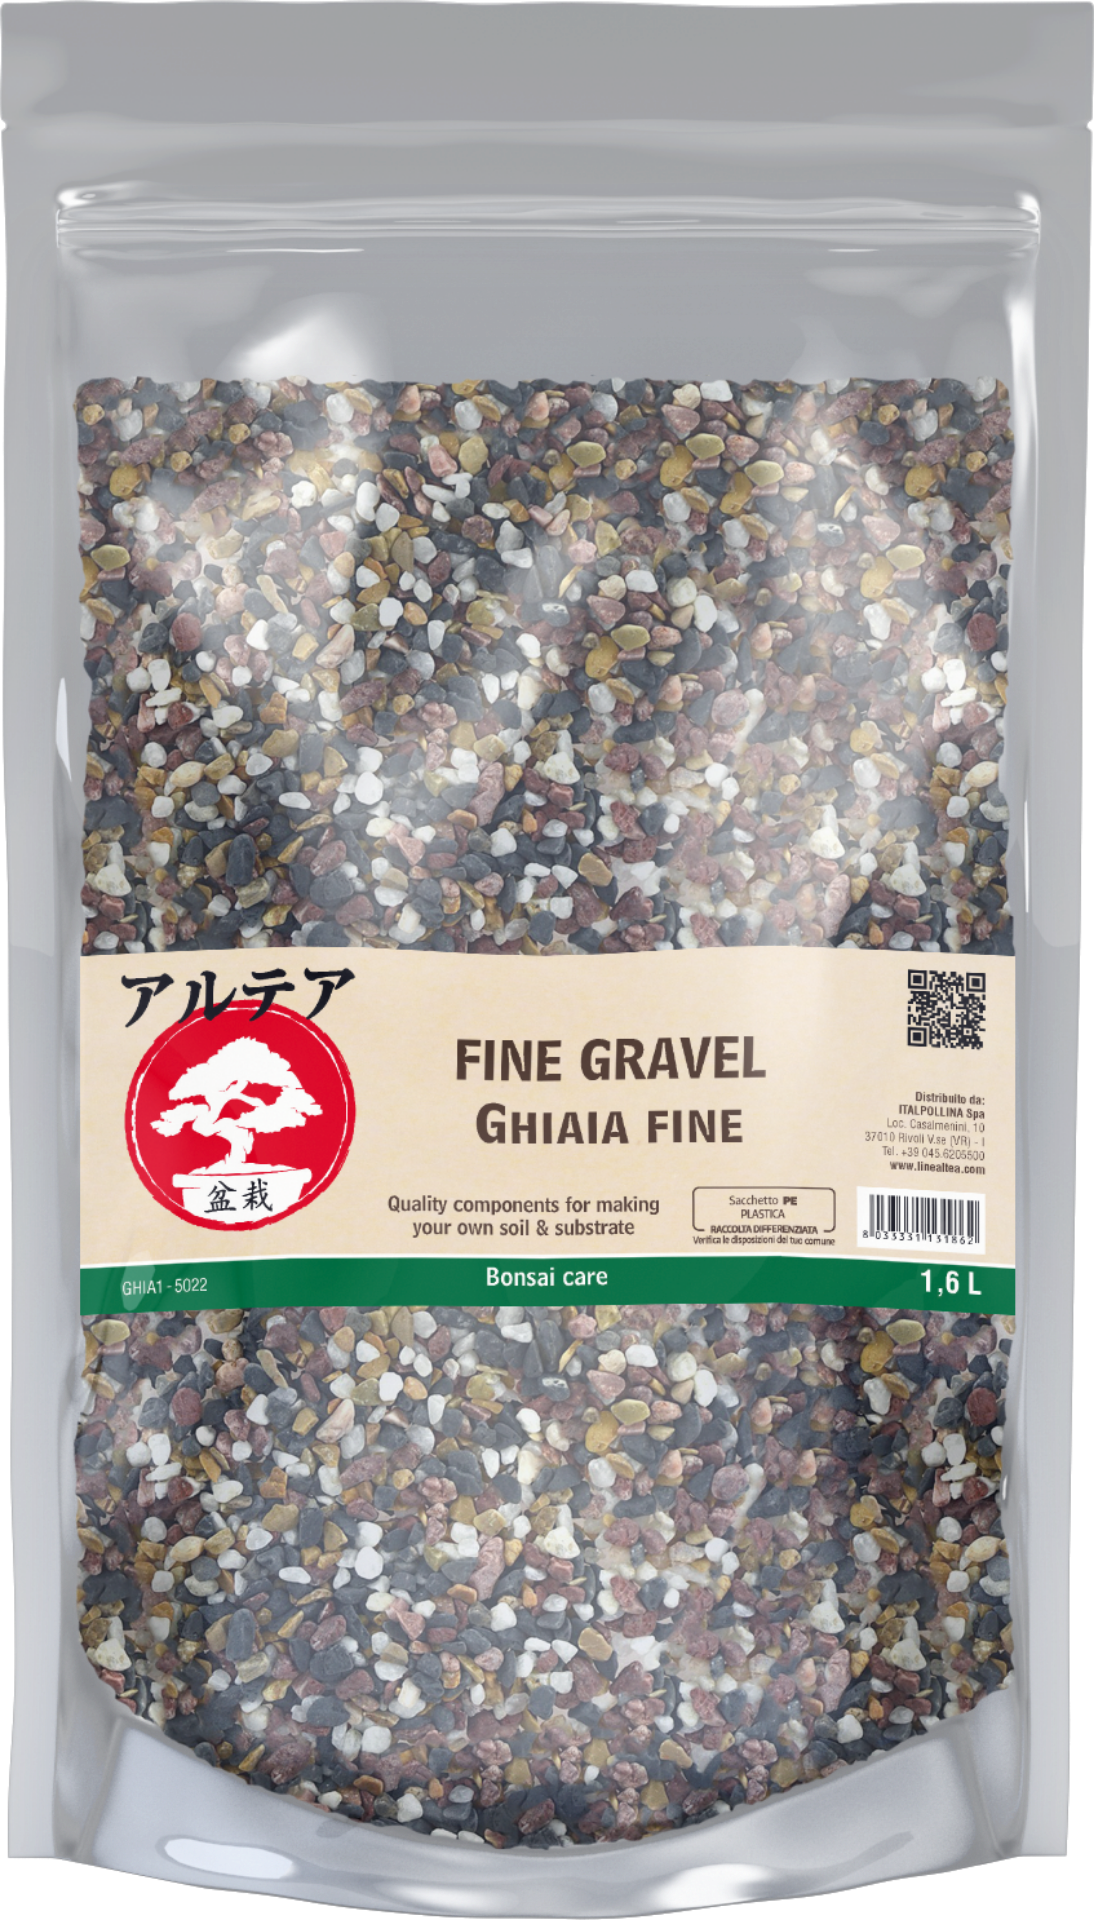 Picture of Fine gravel